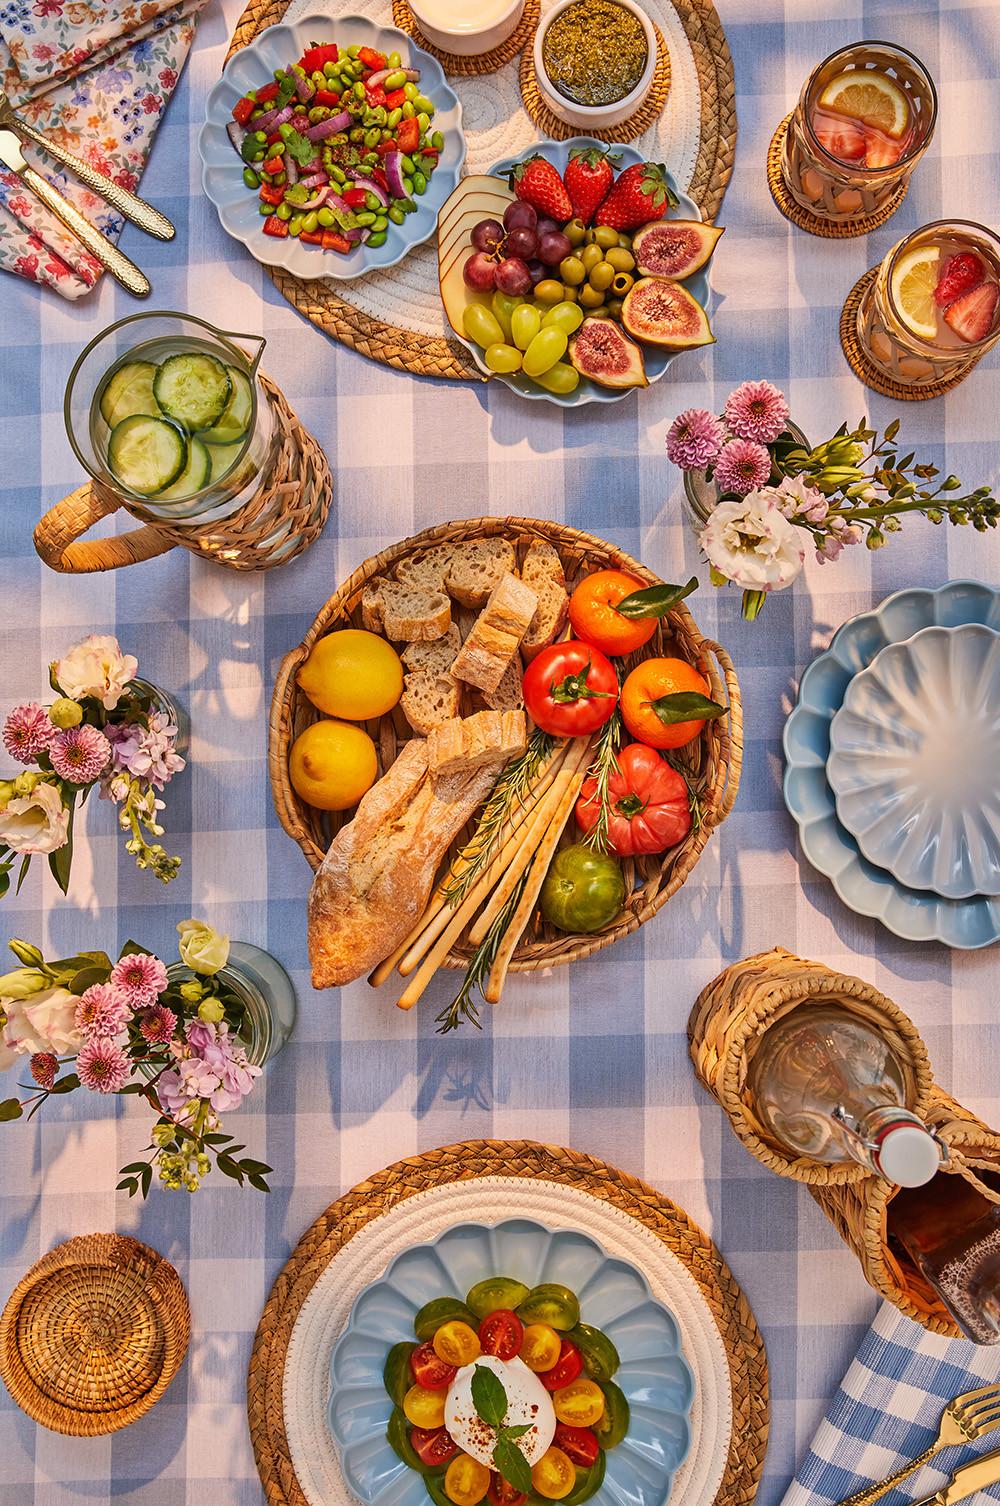 Decoración de mesa con mantel de cuadros vichy azules y varios platos y cestas con comida